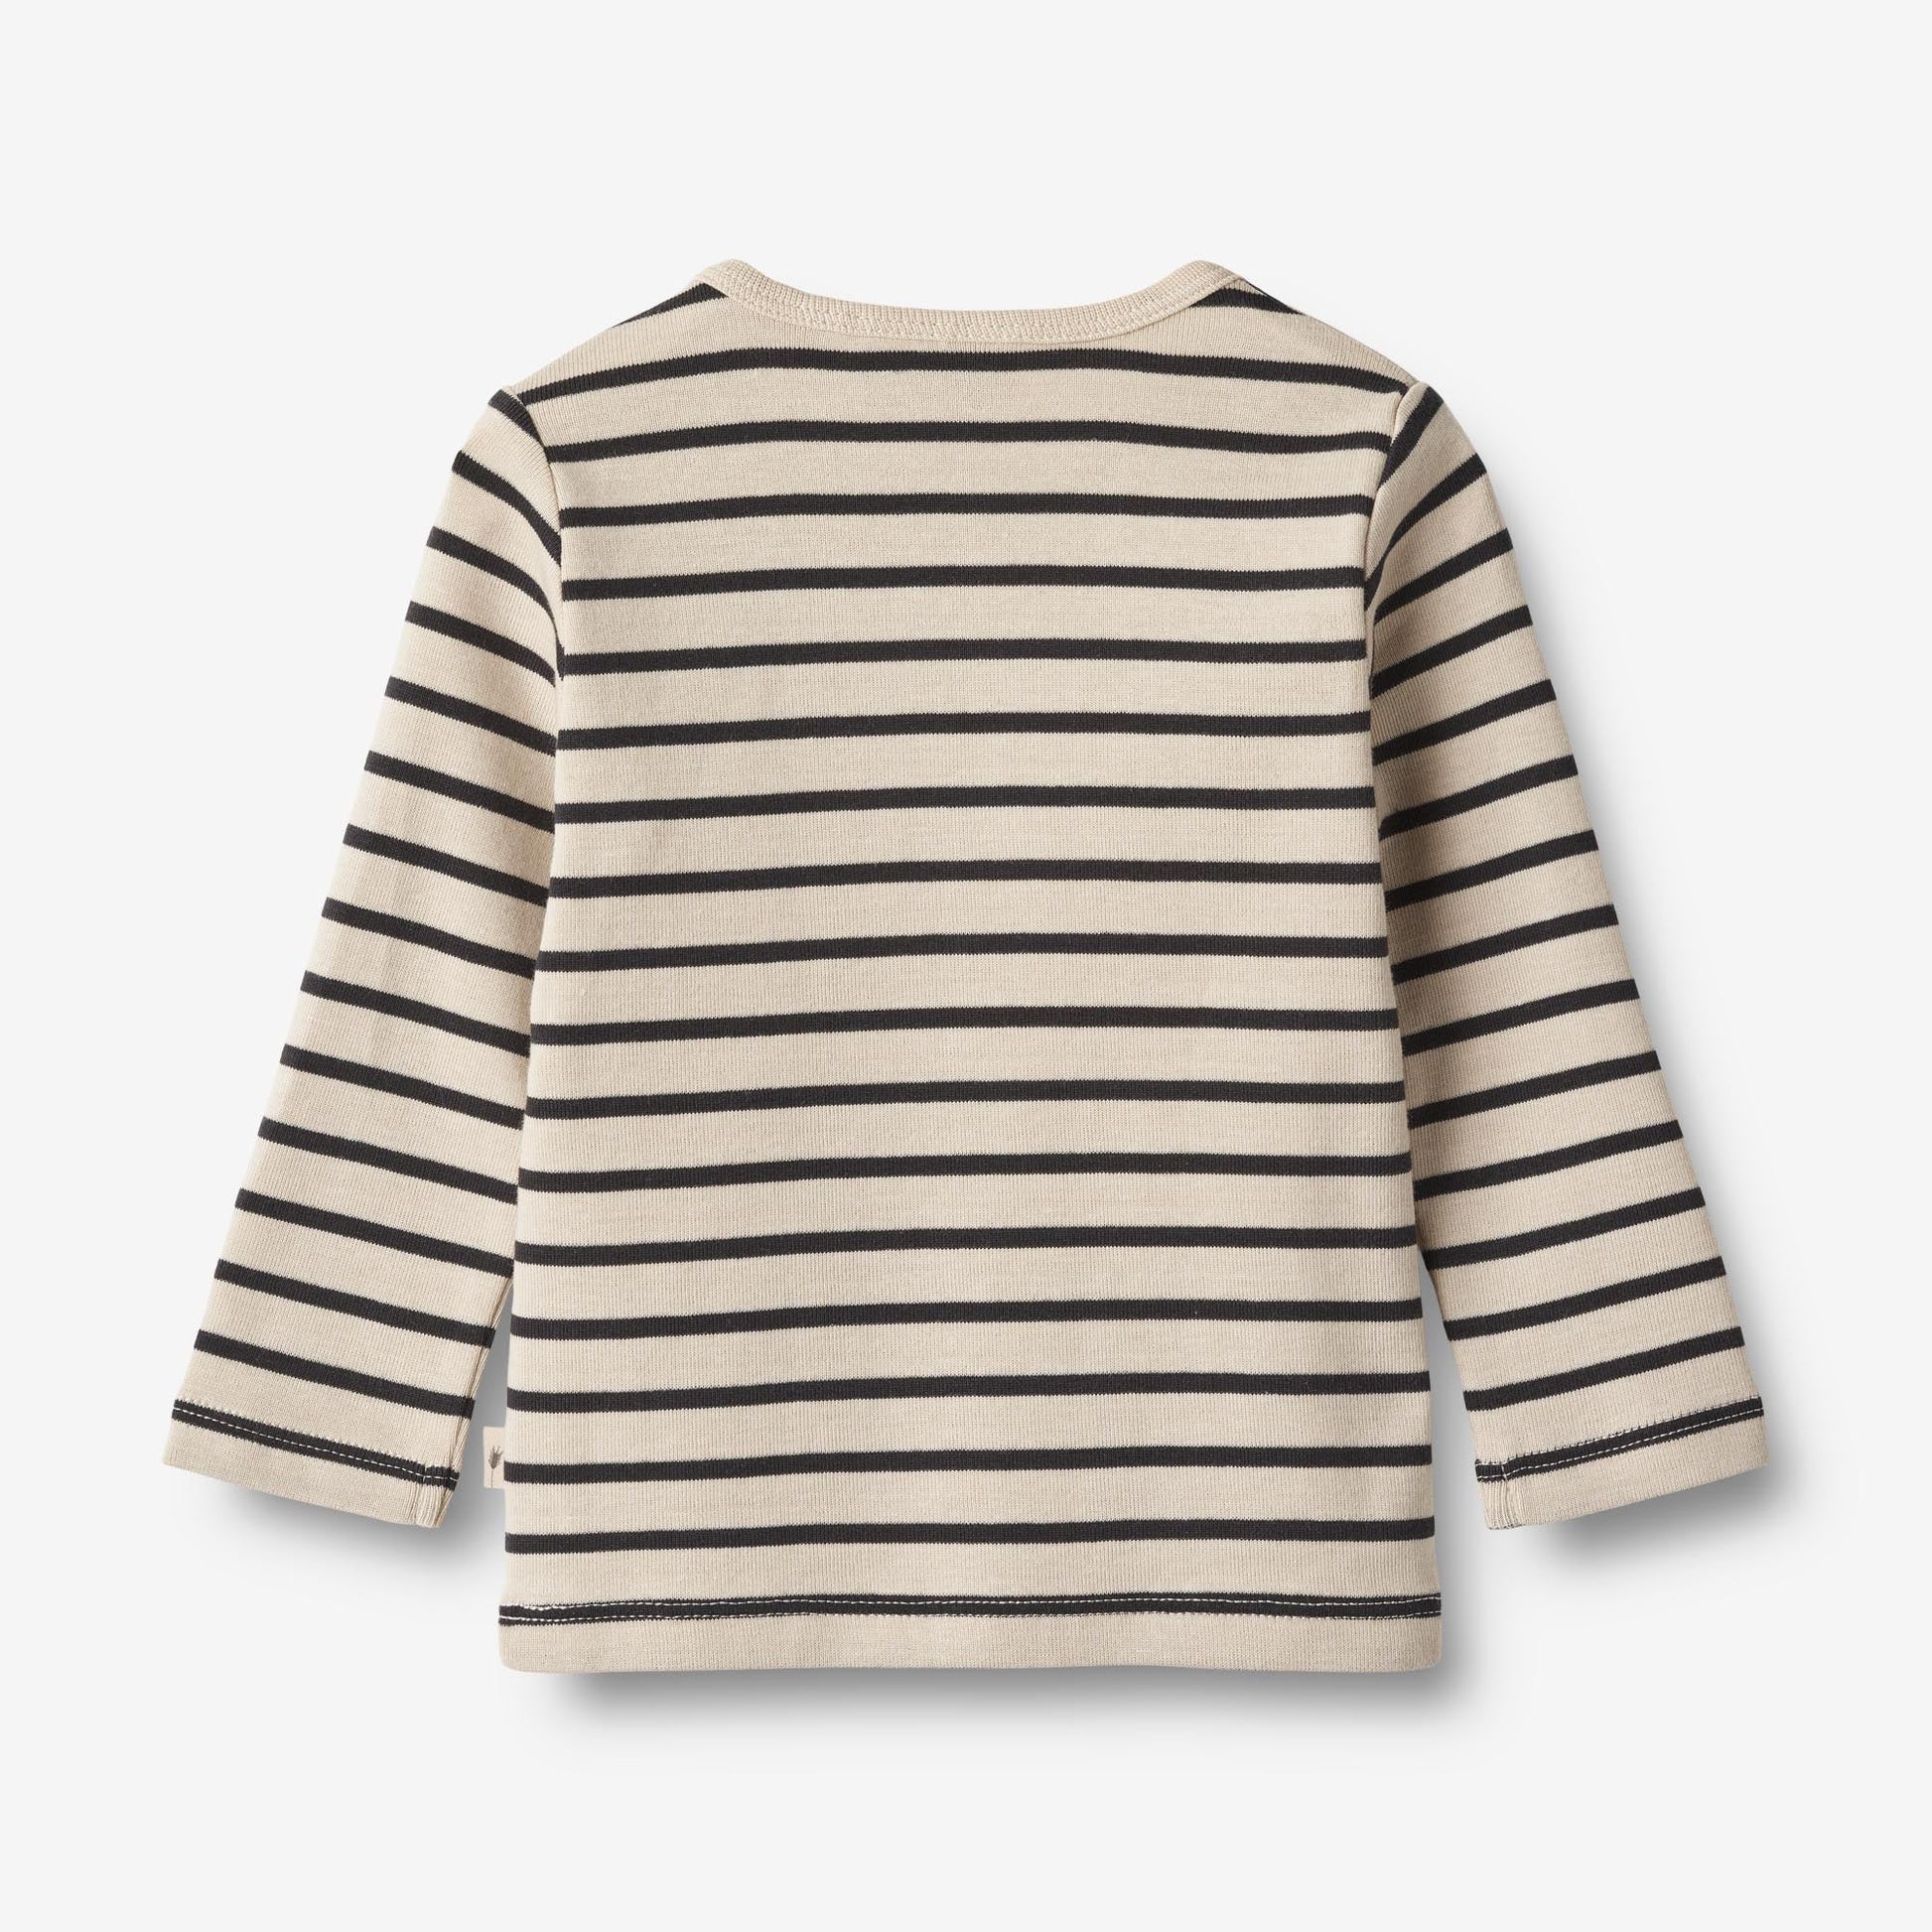 Wheat 'Stig' L/S Baby T-Shirt - Navy Stripe